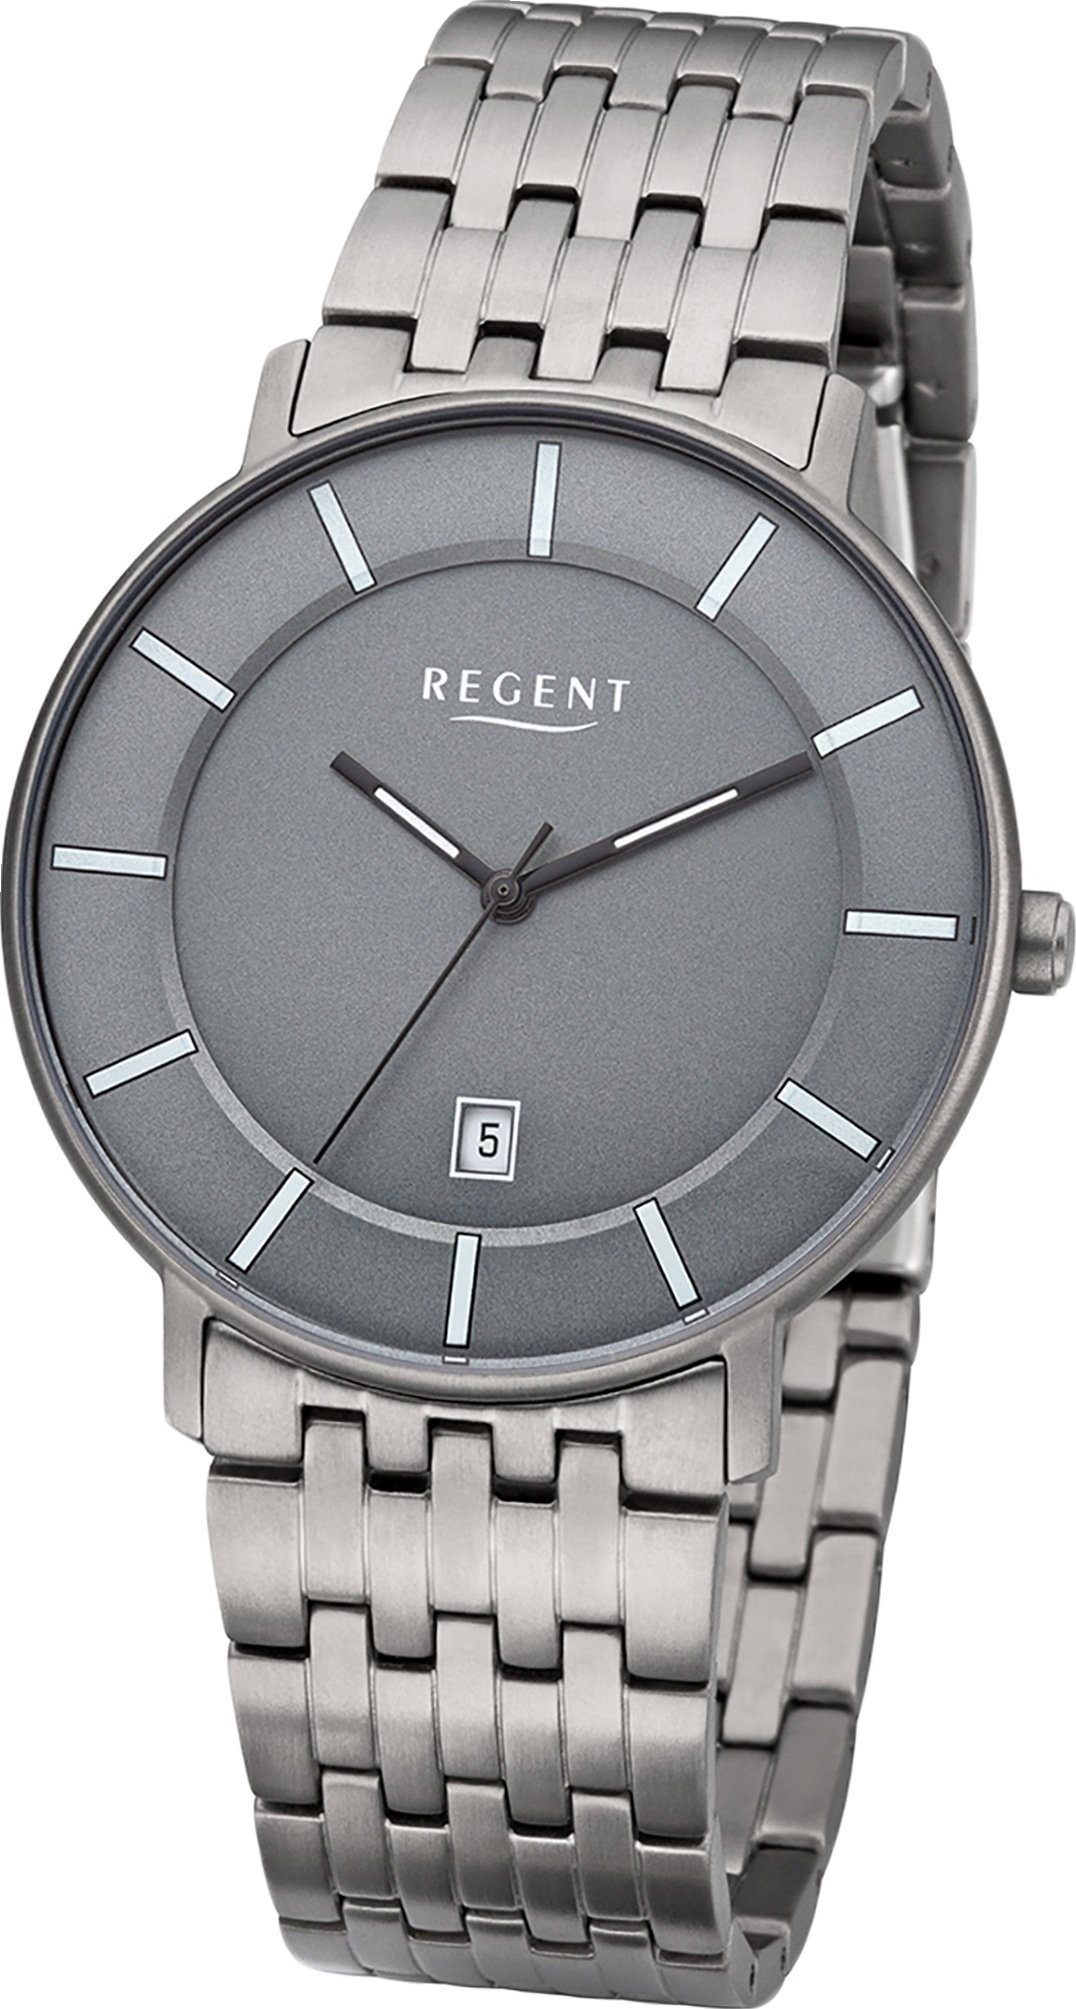 Regent Quarzuhr Regent Metall Herren Uhr F-1175 Analog, Herrenuhr Metallarmband silber, rundes Gehäuse, mittel (ca. 39mm)